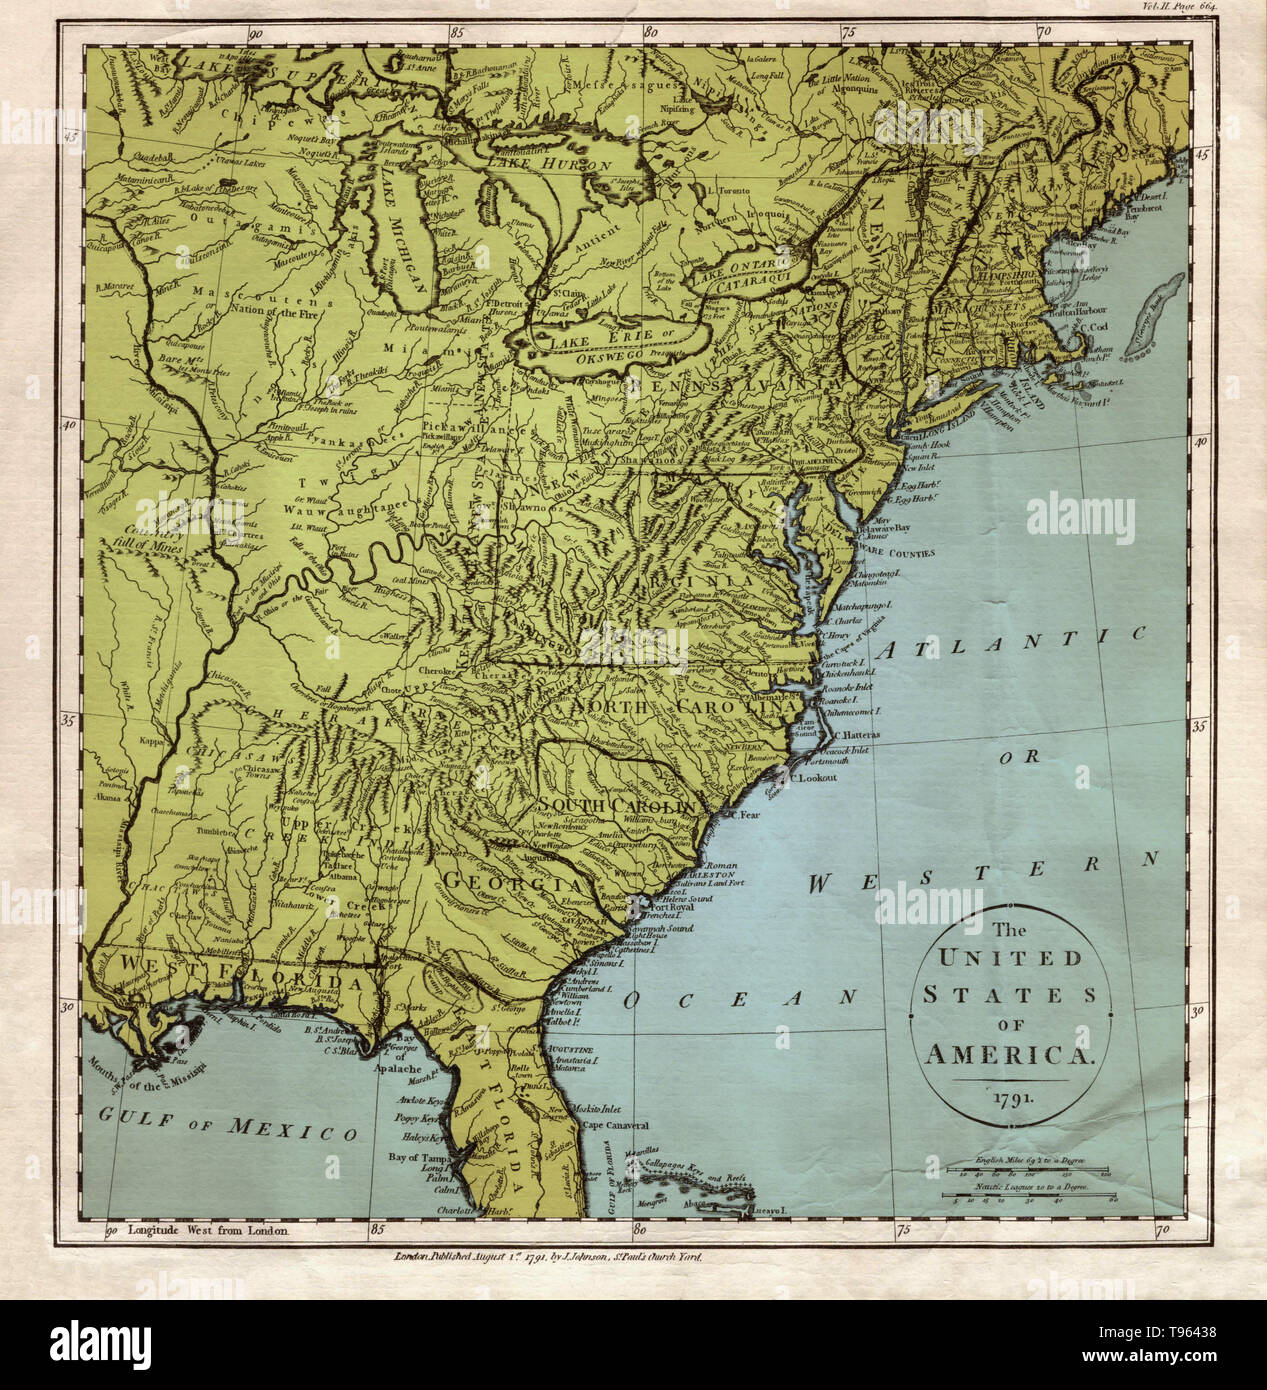 Una mappa degli Stati Uniti d'America, 1791, con il 'Atlantic o Western Ocean' marcato, così come 'West Florida." creato da J. Johnson, Chiesa di San Paolo cantiere. Questa immagine è stata migliorata a colori. Foto Stock